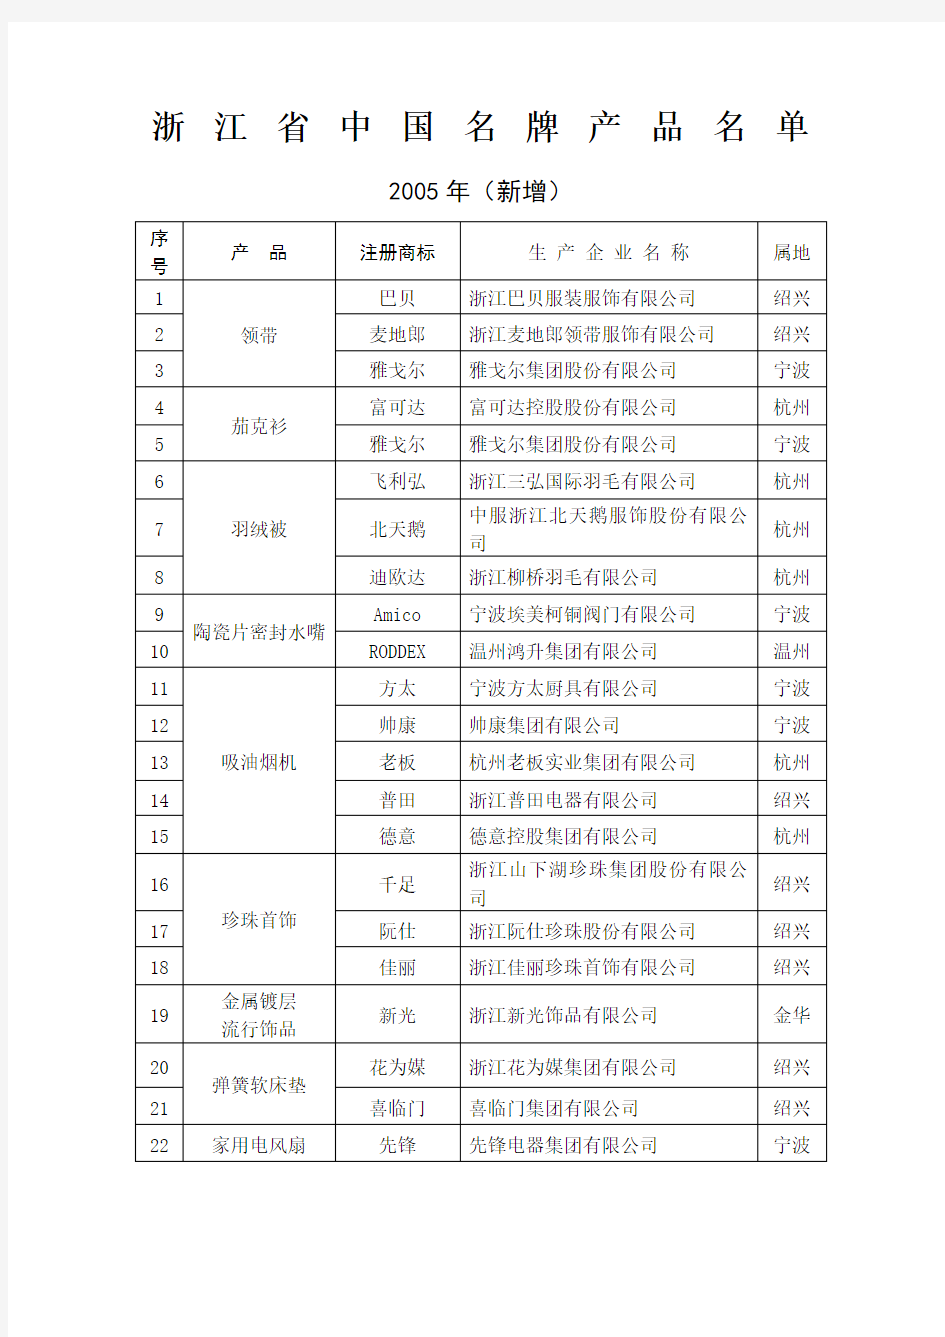 浙江省中国名牌产品名单 